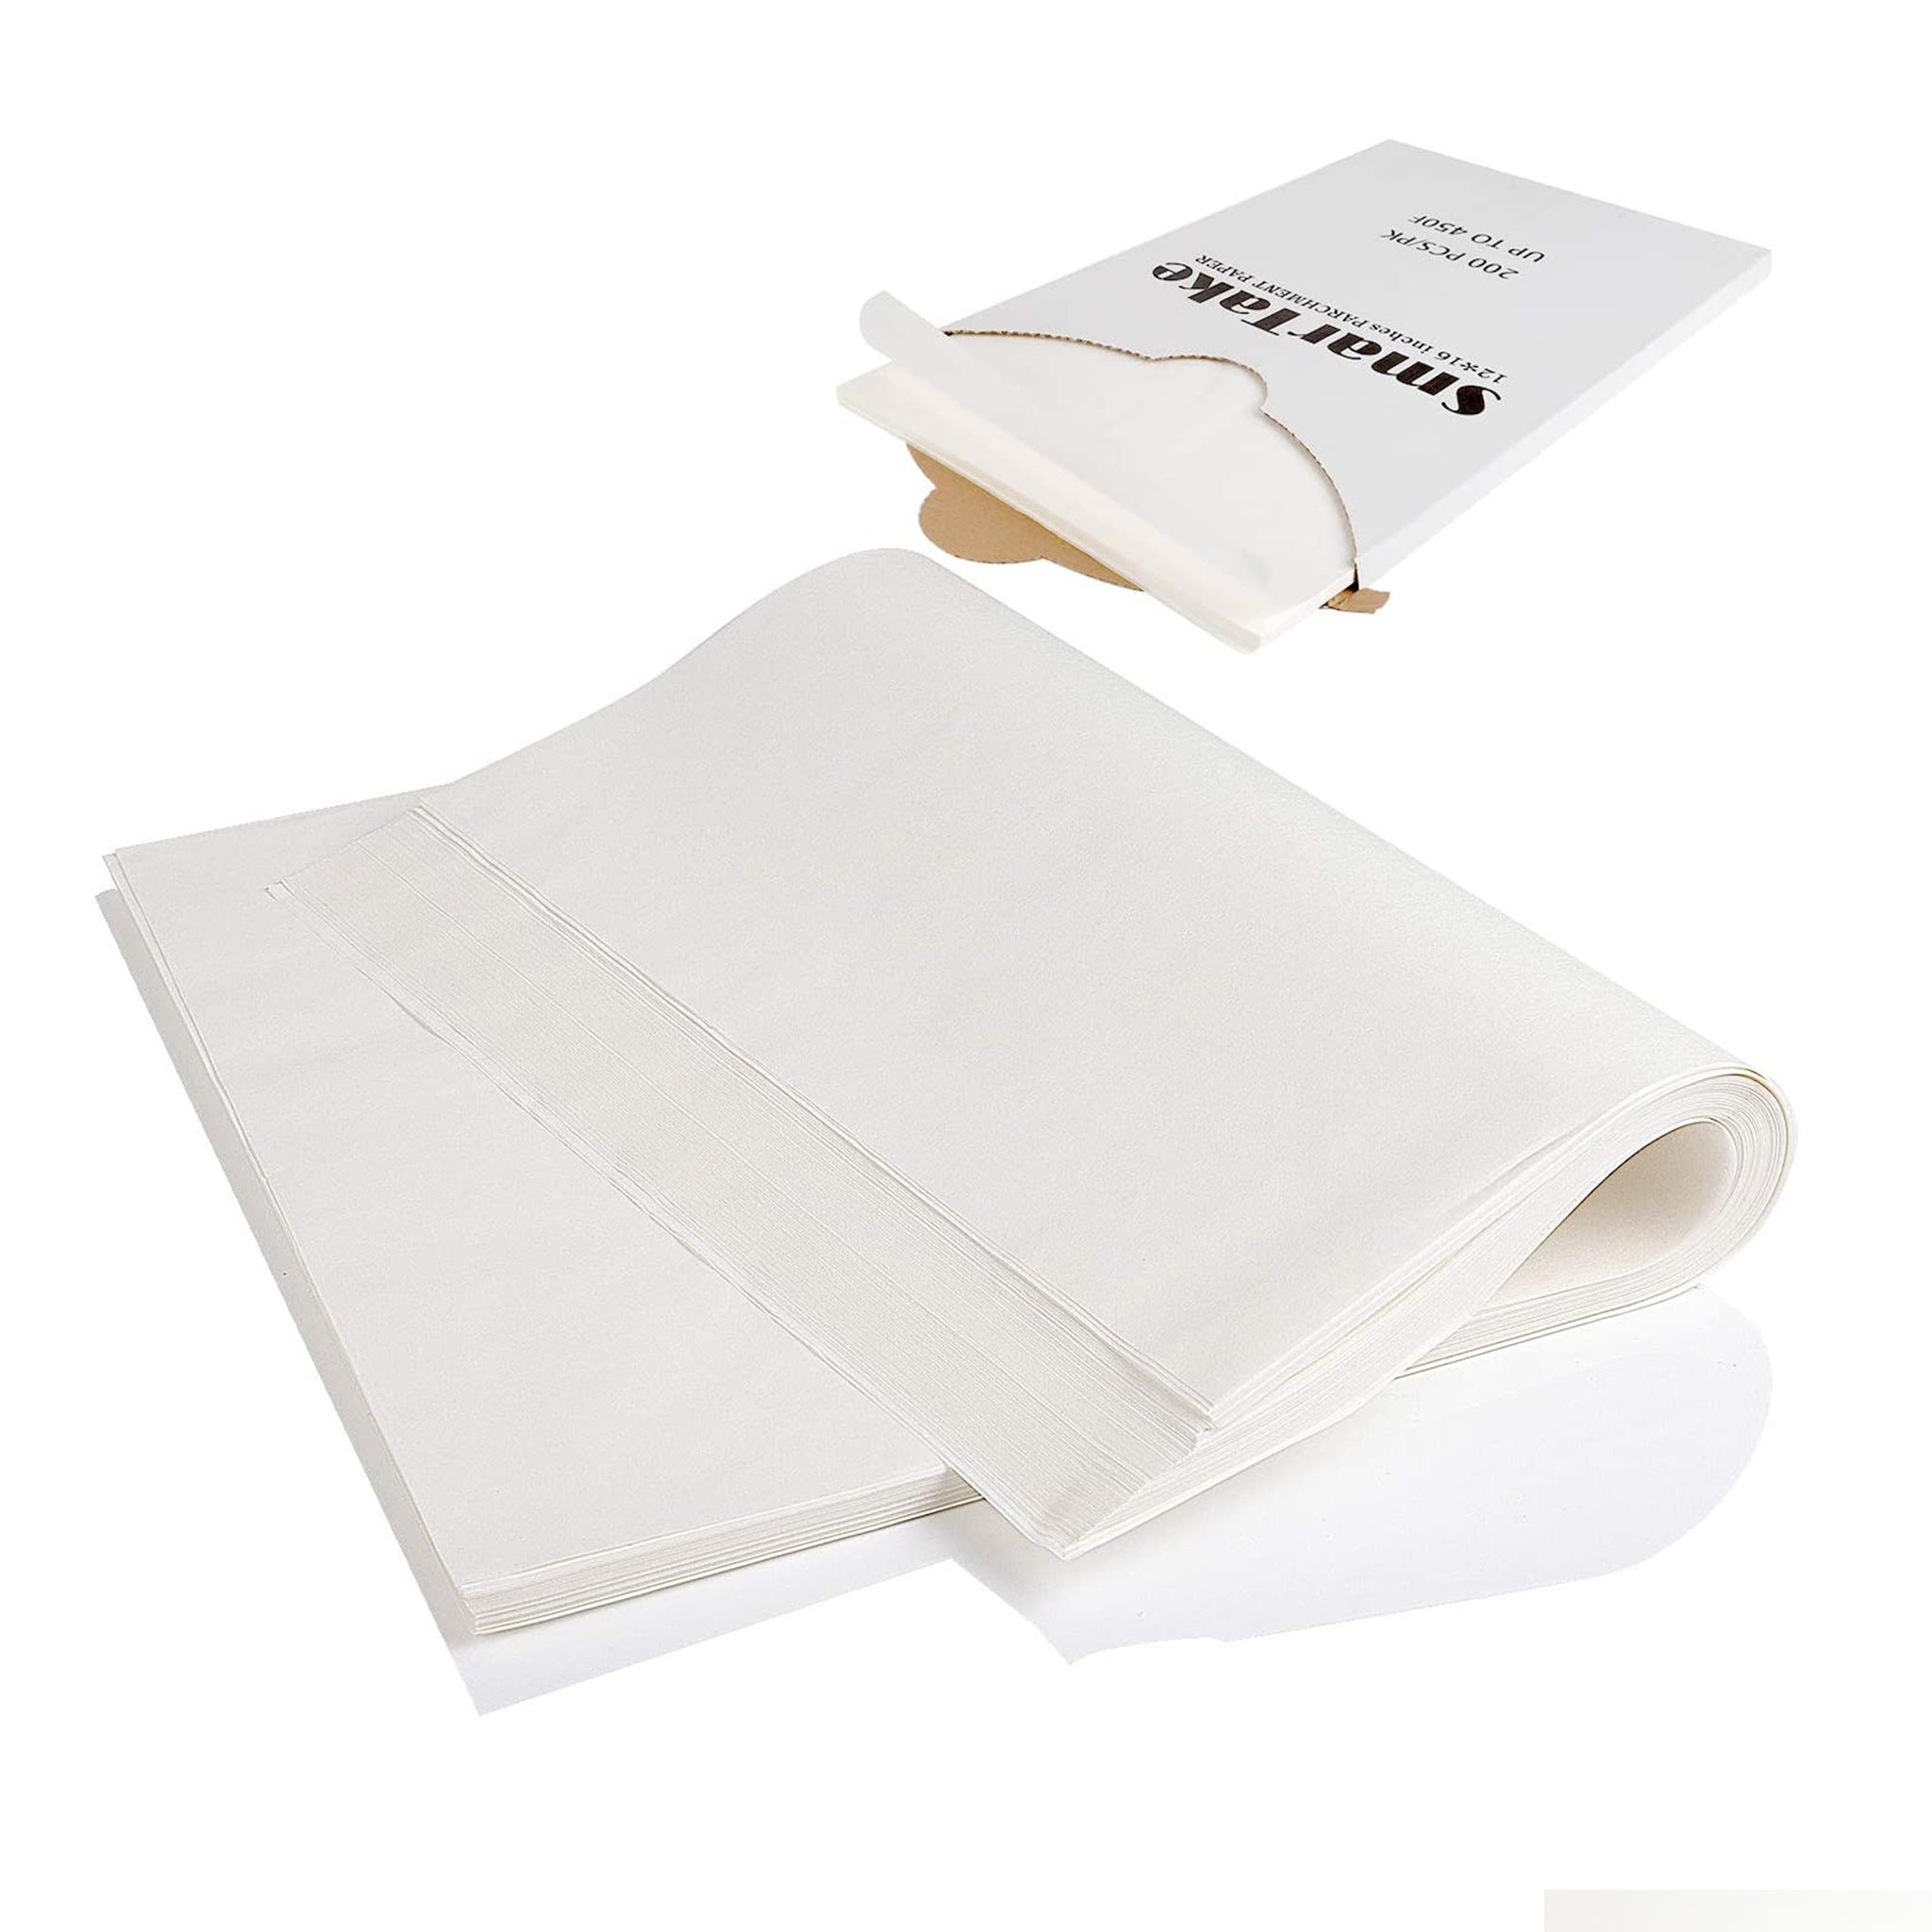 Parchment Paper Sheets 12x16